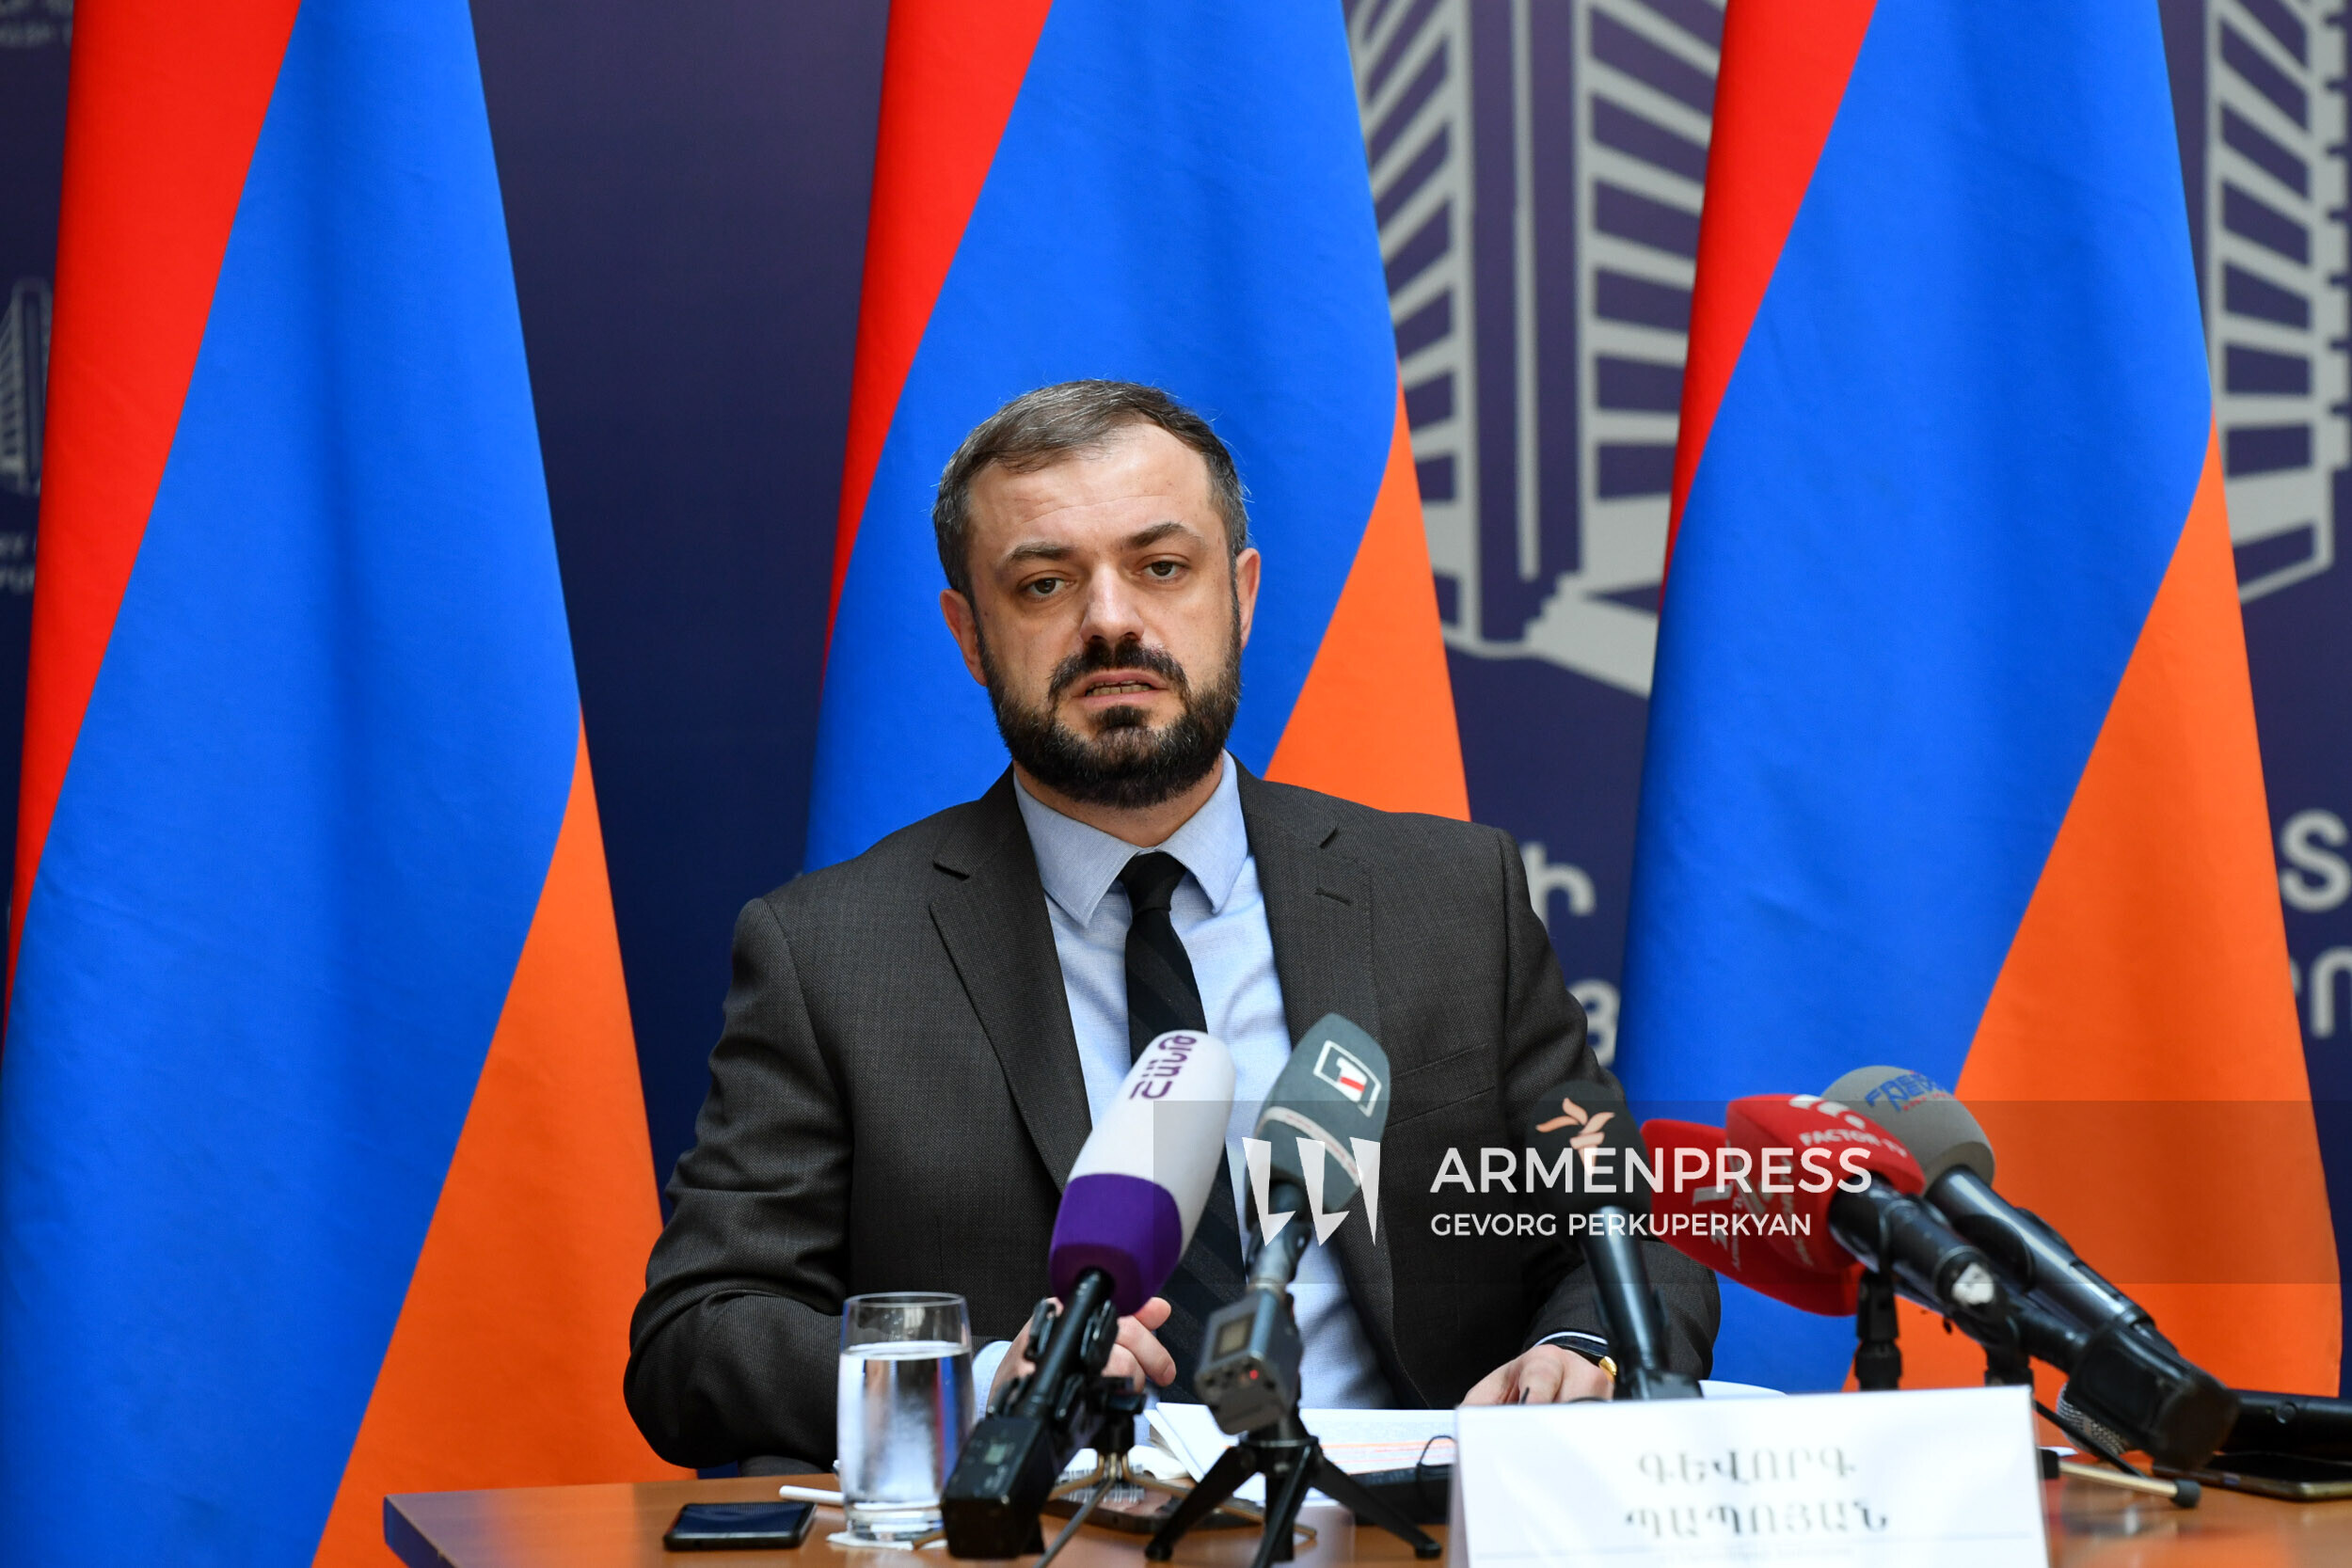 Ermenistan Ekonomi Bakanı Gevorg Papoyan görevde bulunduğu 100 gününü özetliyor